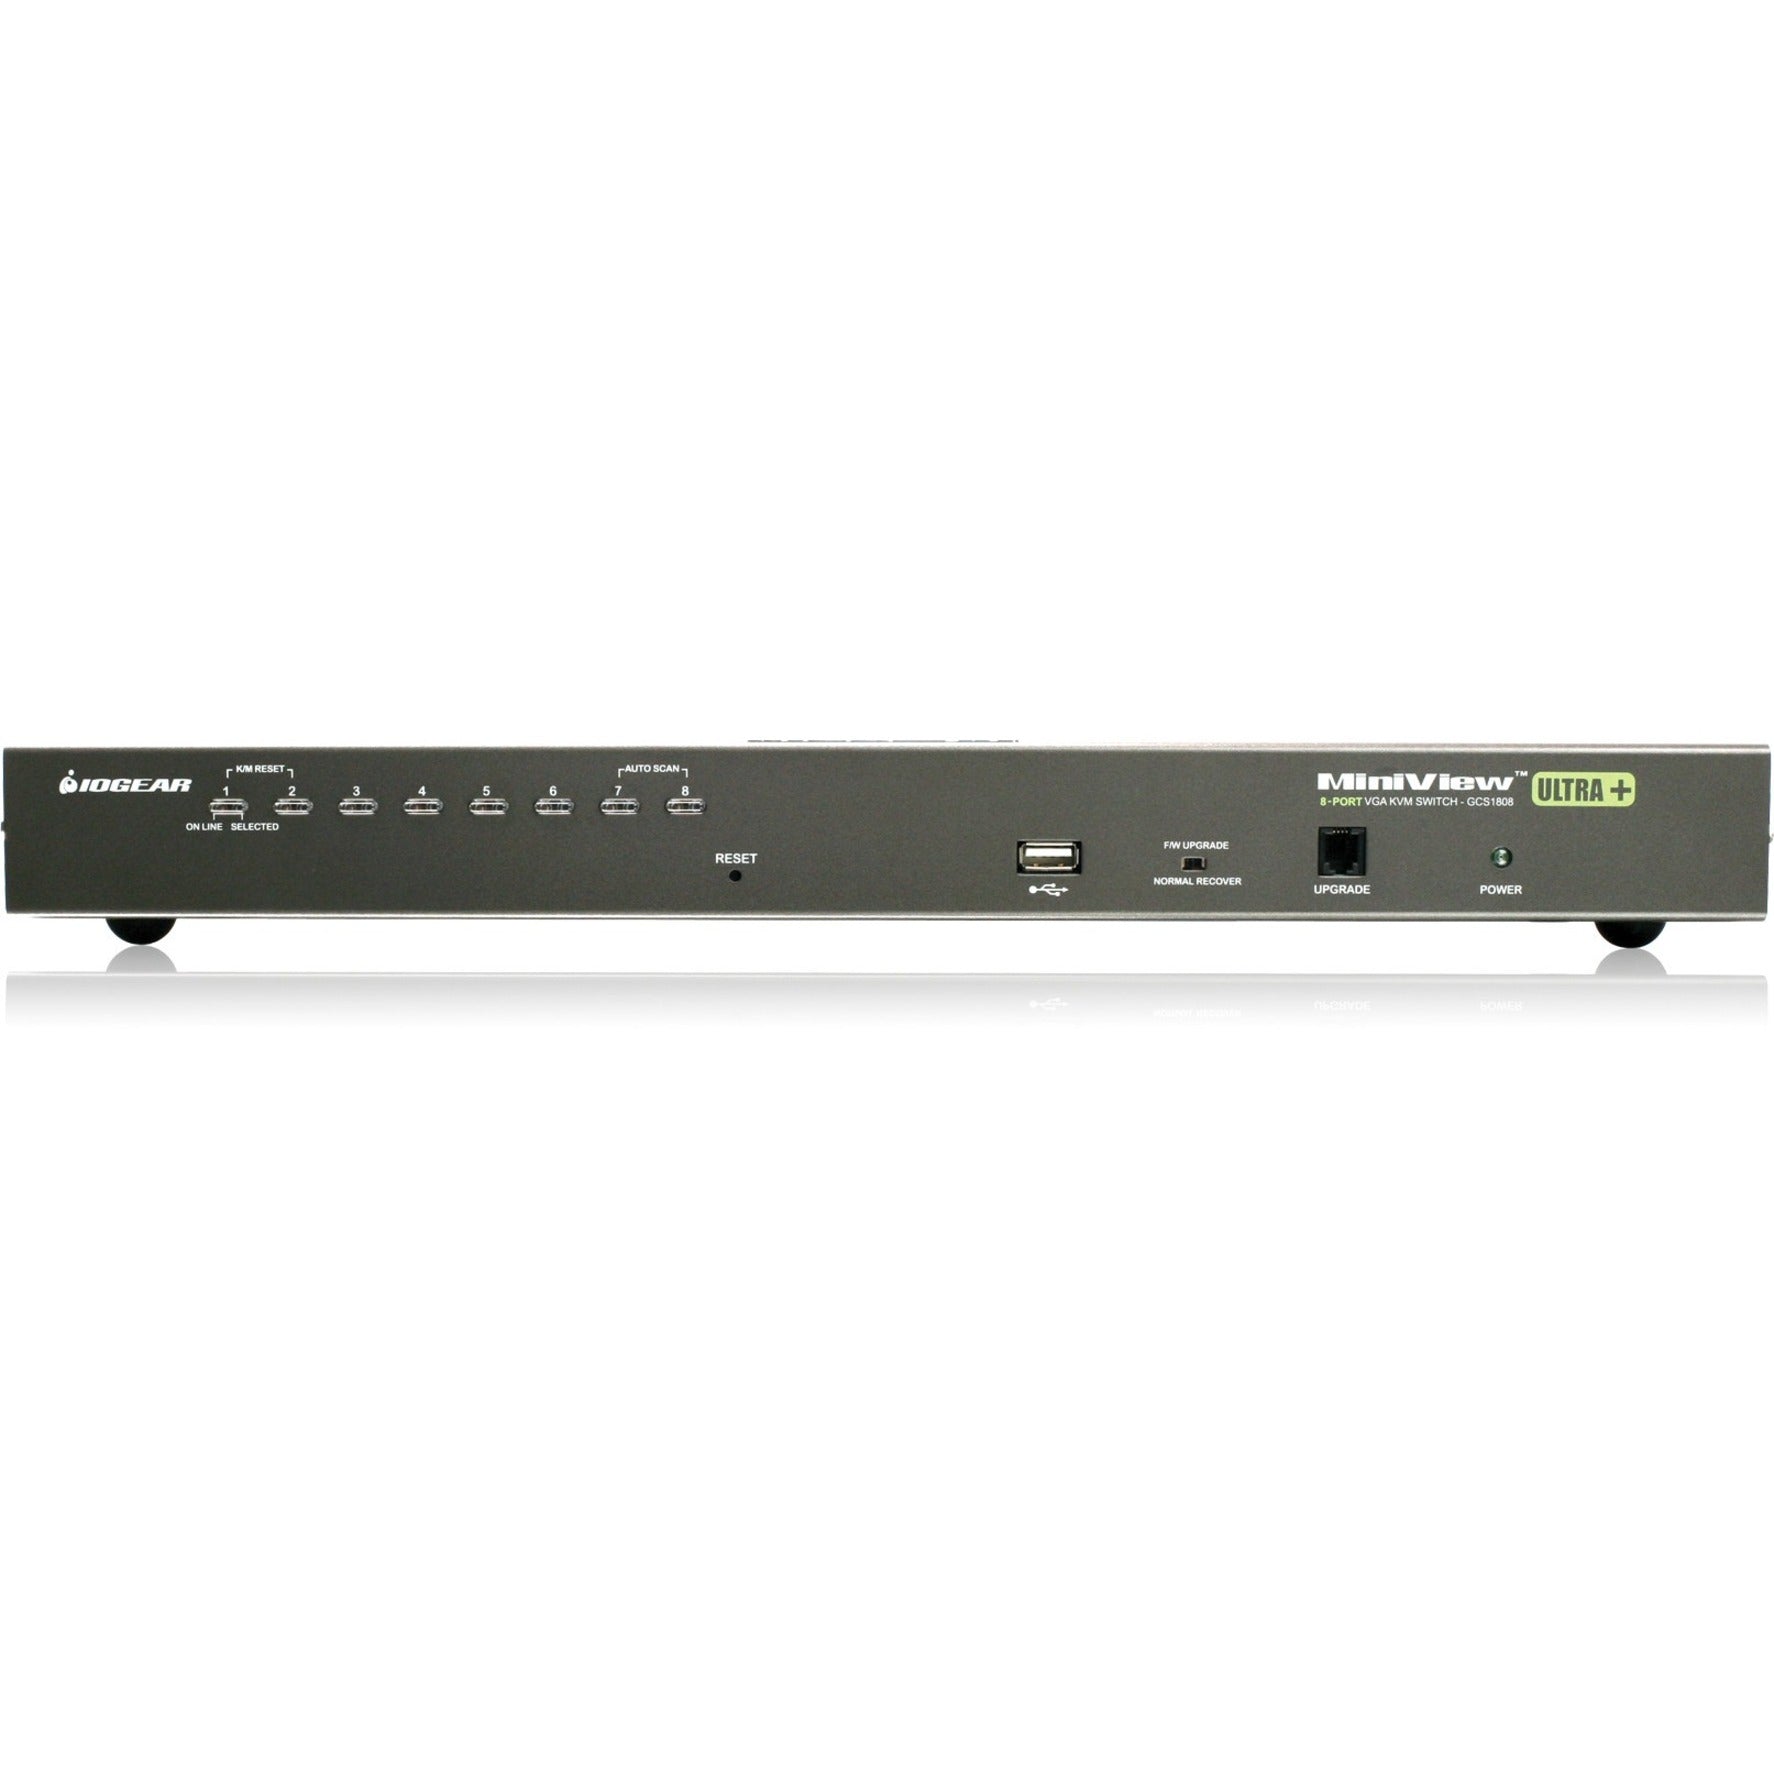 IOGEAR GCS1808KITTAA 8-Port USB PS/2 Combo VGA KVM Switch with Cables, TAA Compliant, 2046 x 1536 Resolution, 3 Year Warranty